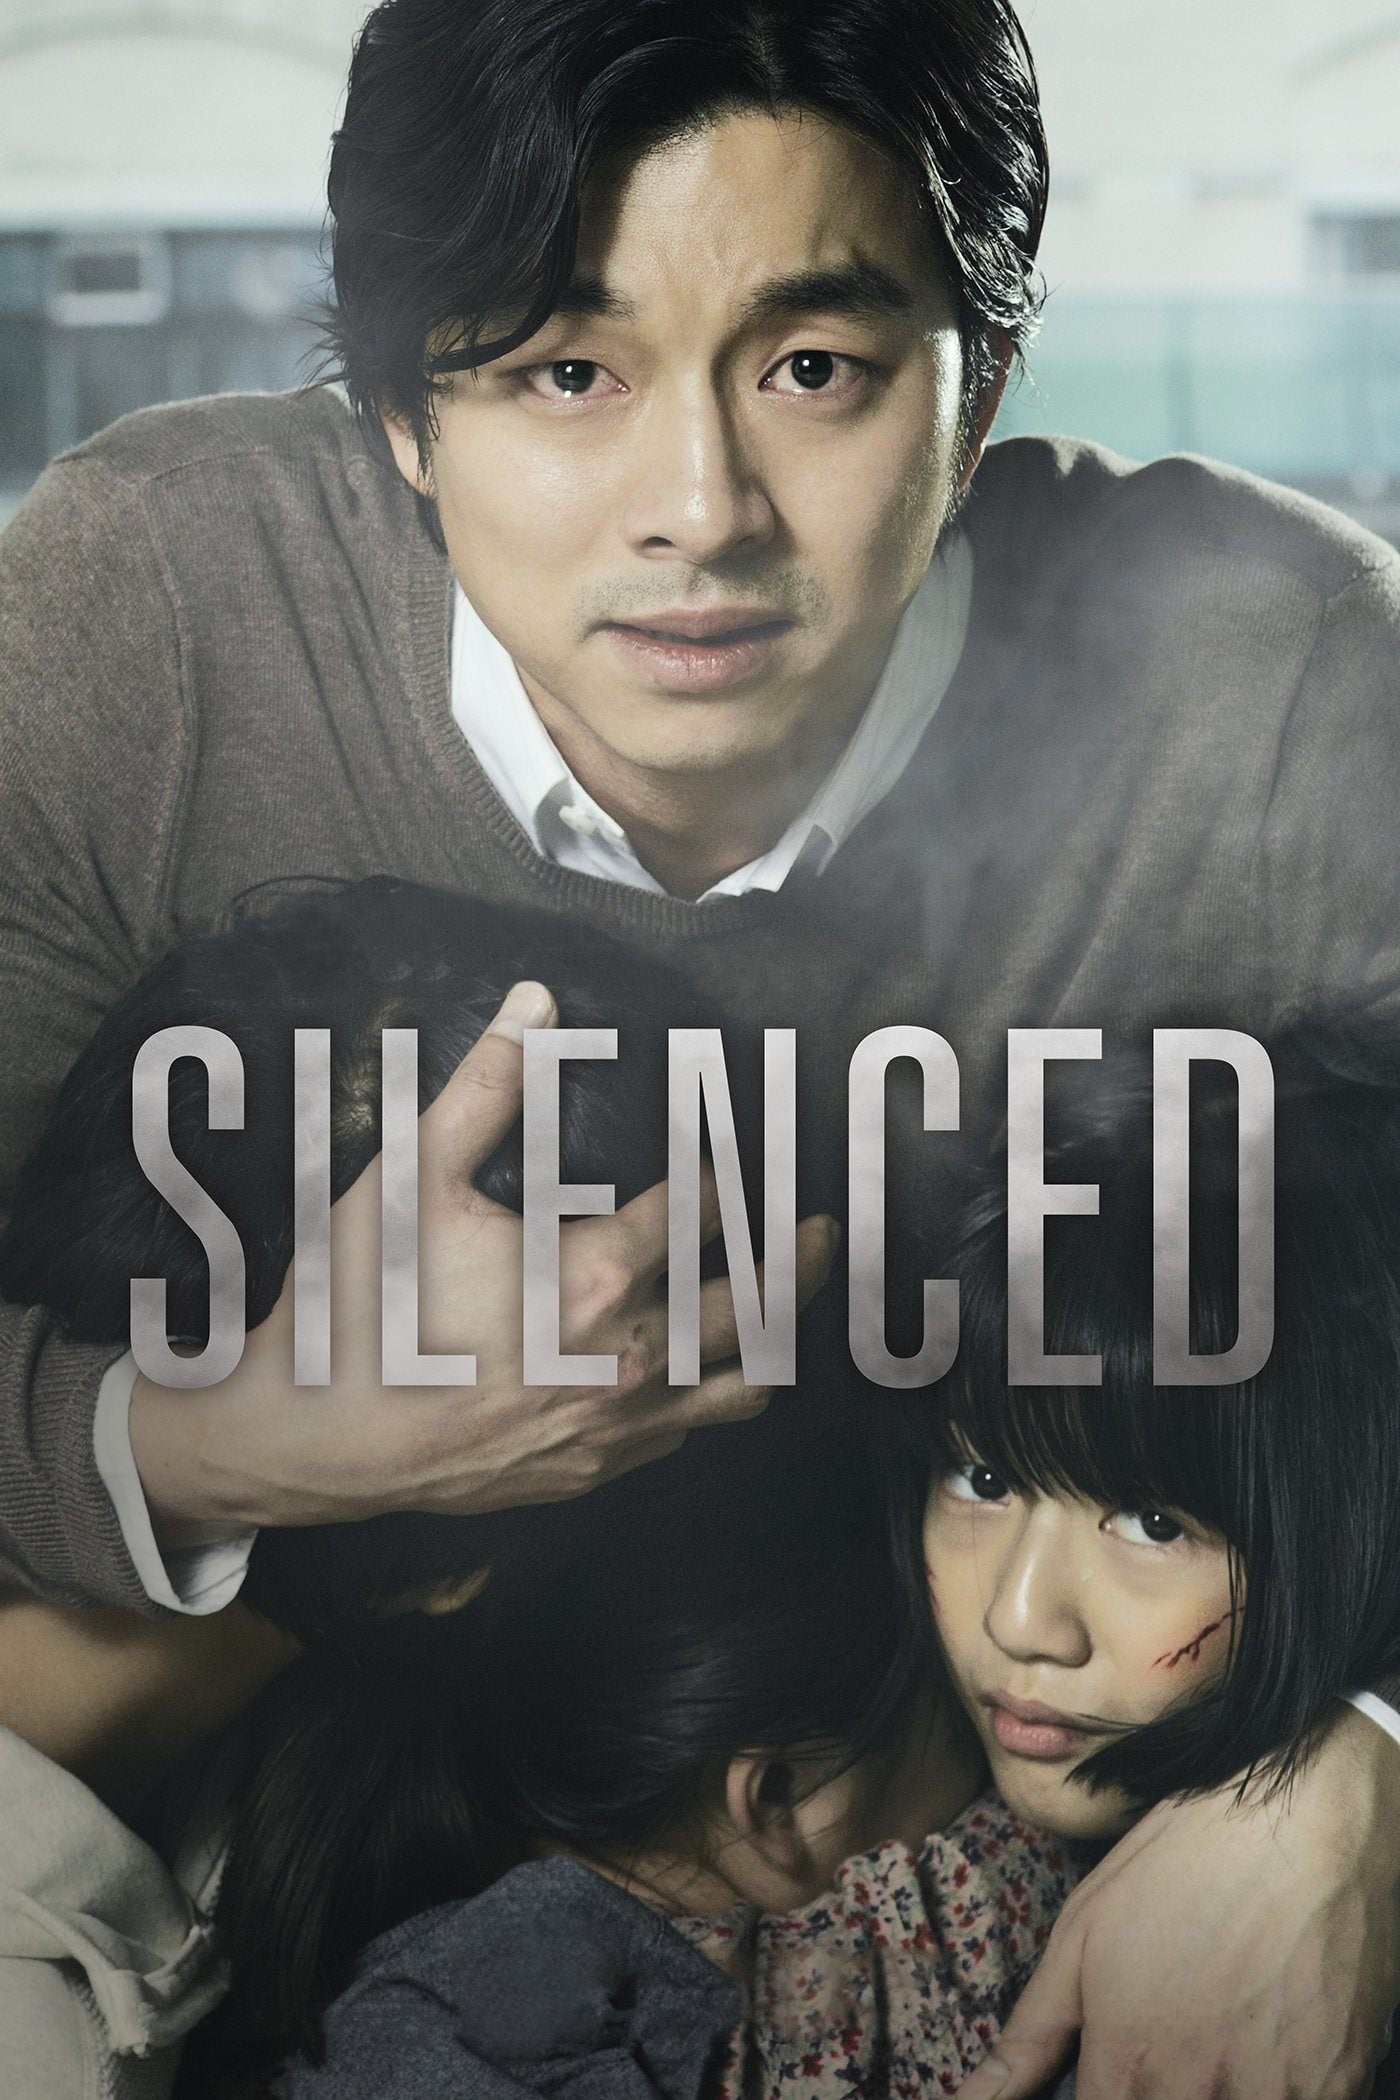 Silenced [Sub-ITA] [HD] (2011)